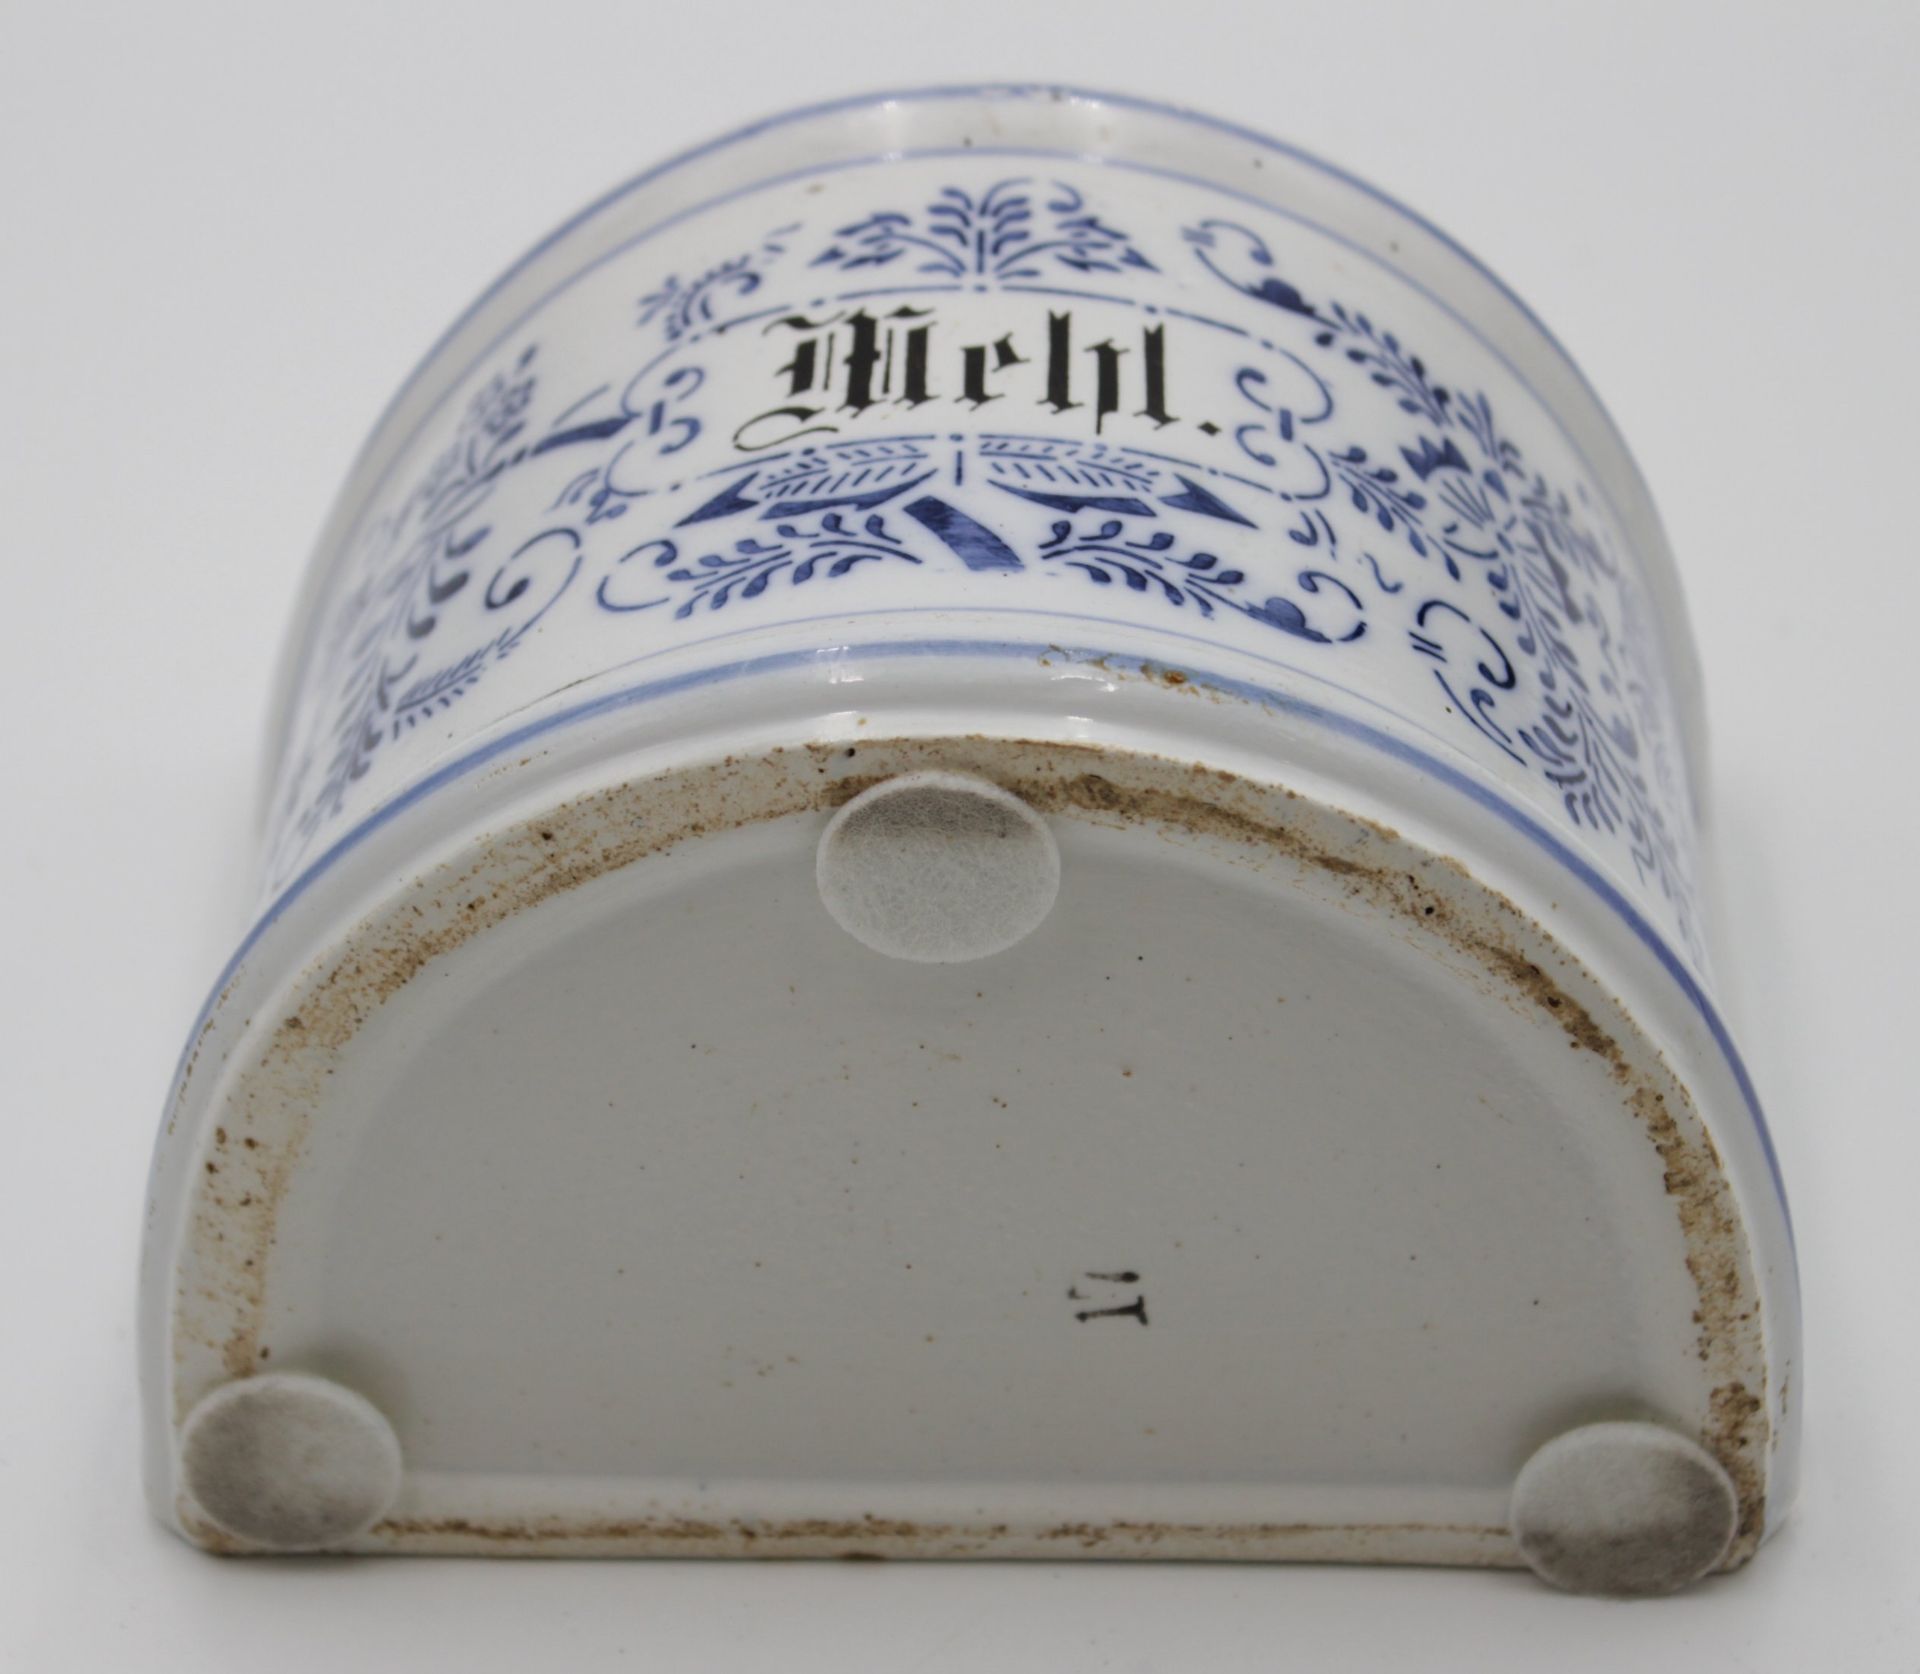 Küchen-Wandgefäss um 1900, blaues florales Dekor, beschrift. "Mehl", Altersspuren, H-23,5cm B-17cm. - Image 4 of 4